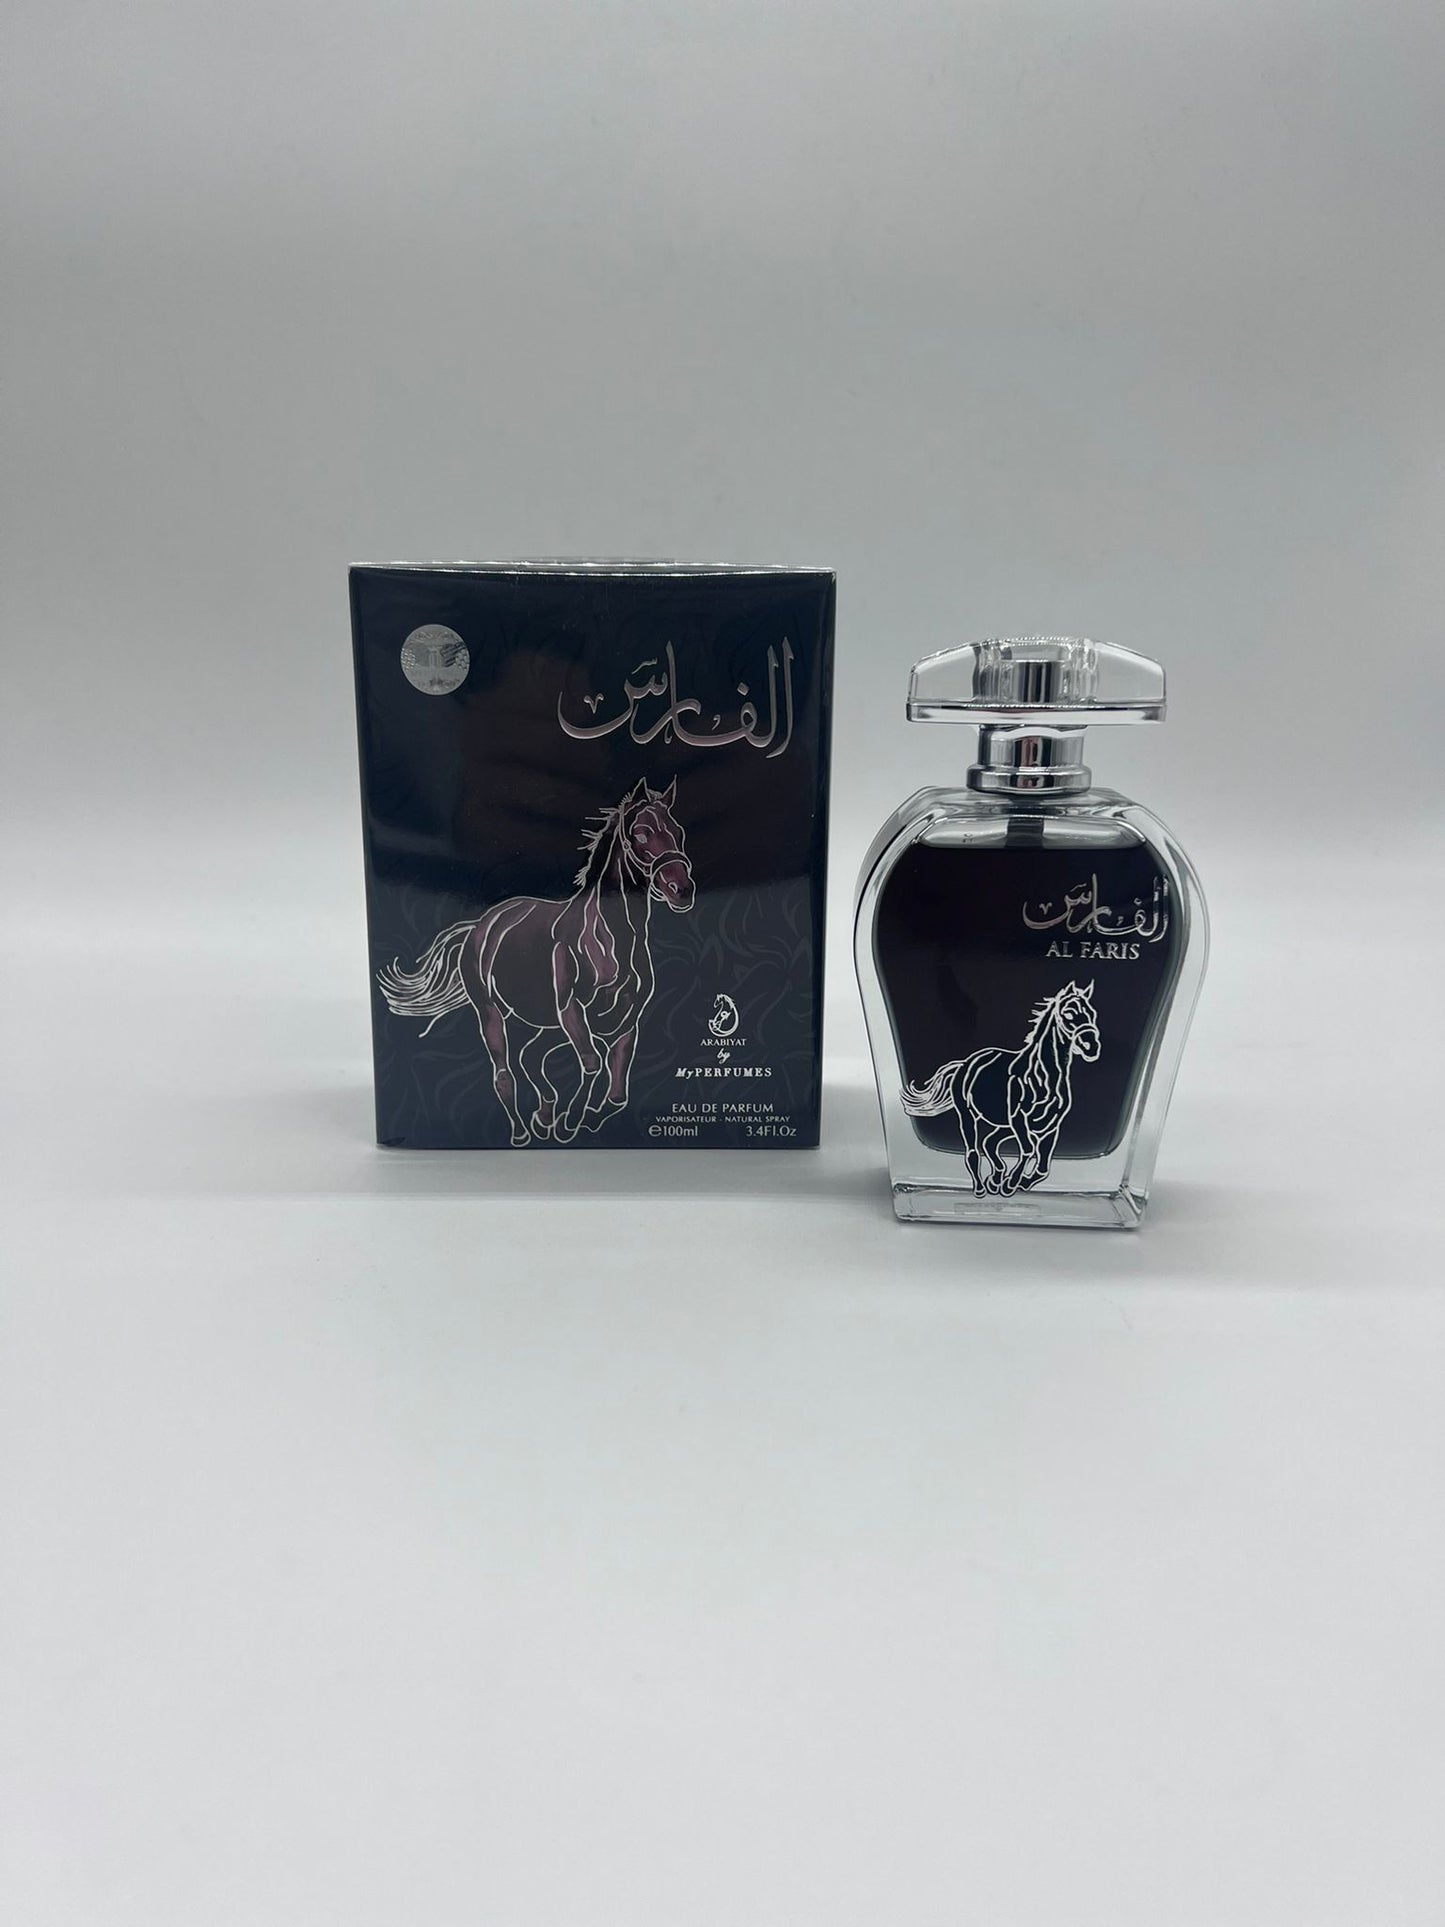 AL FARIS  - Eau de Parfum - My perfumes I 100 ml